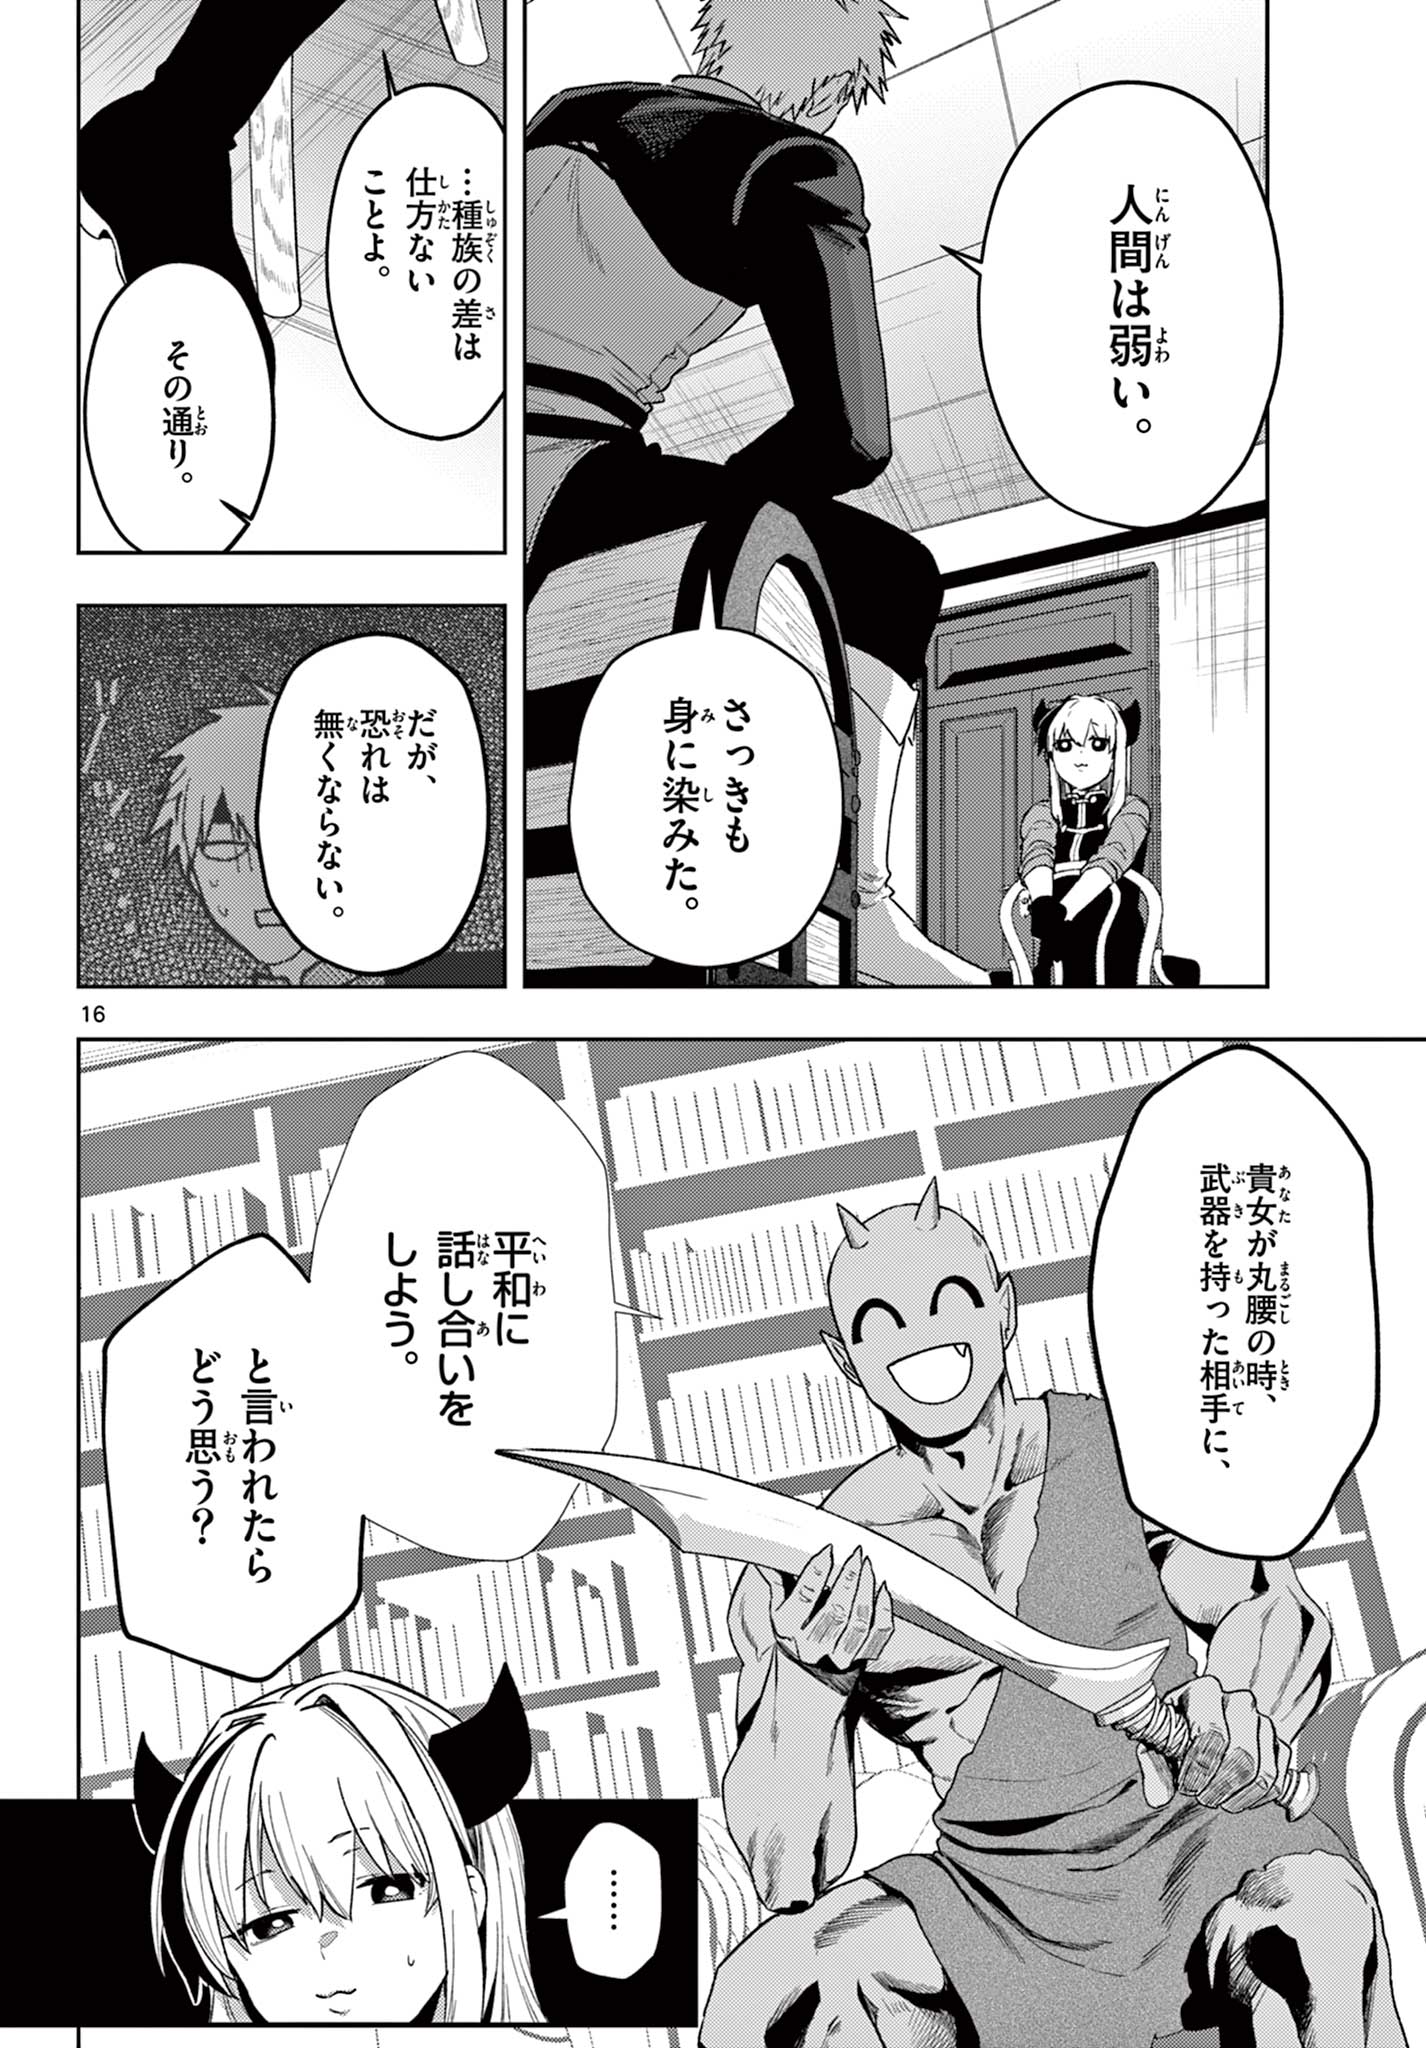 Mataku no Vermut - Chapter 23 - Page 16